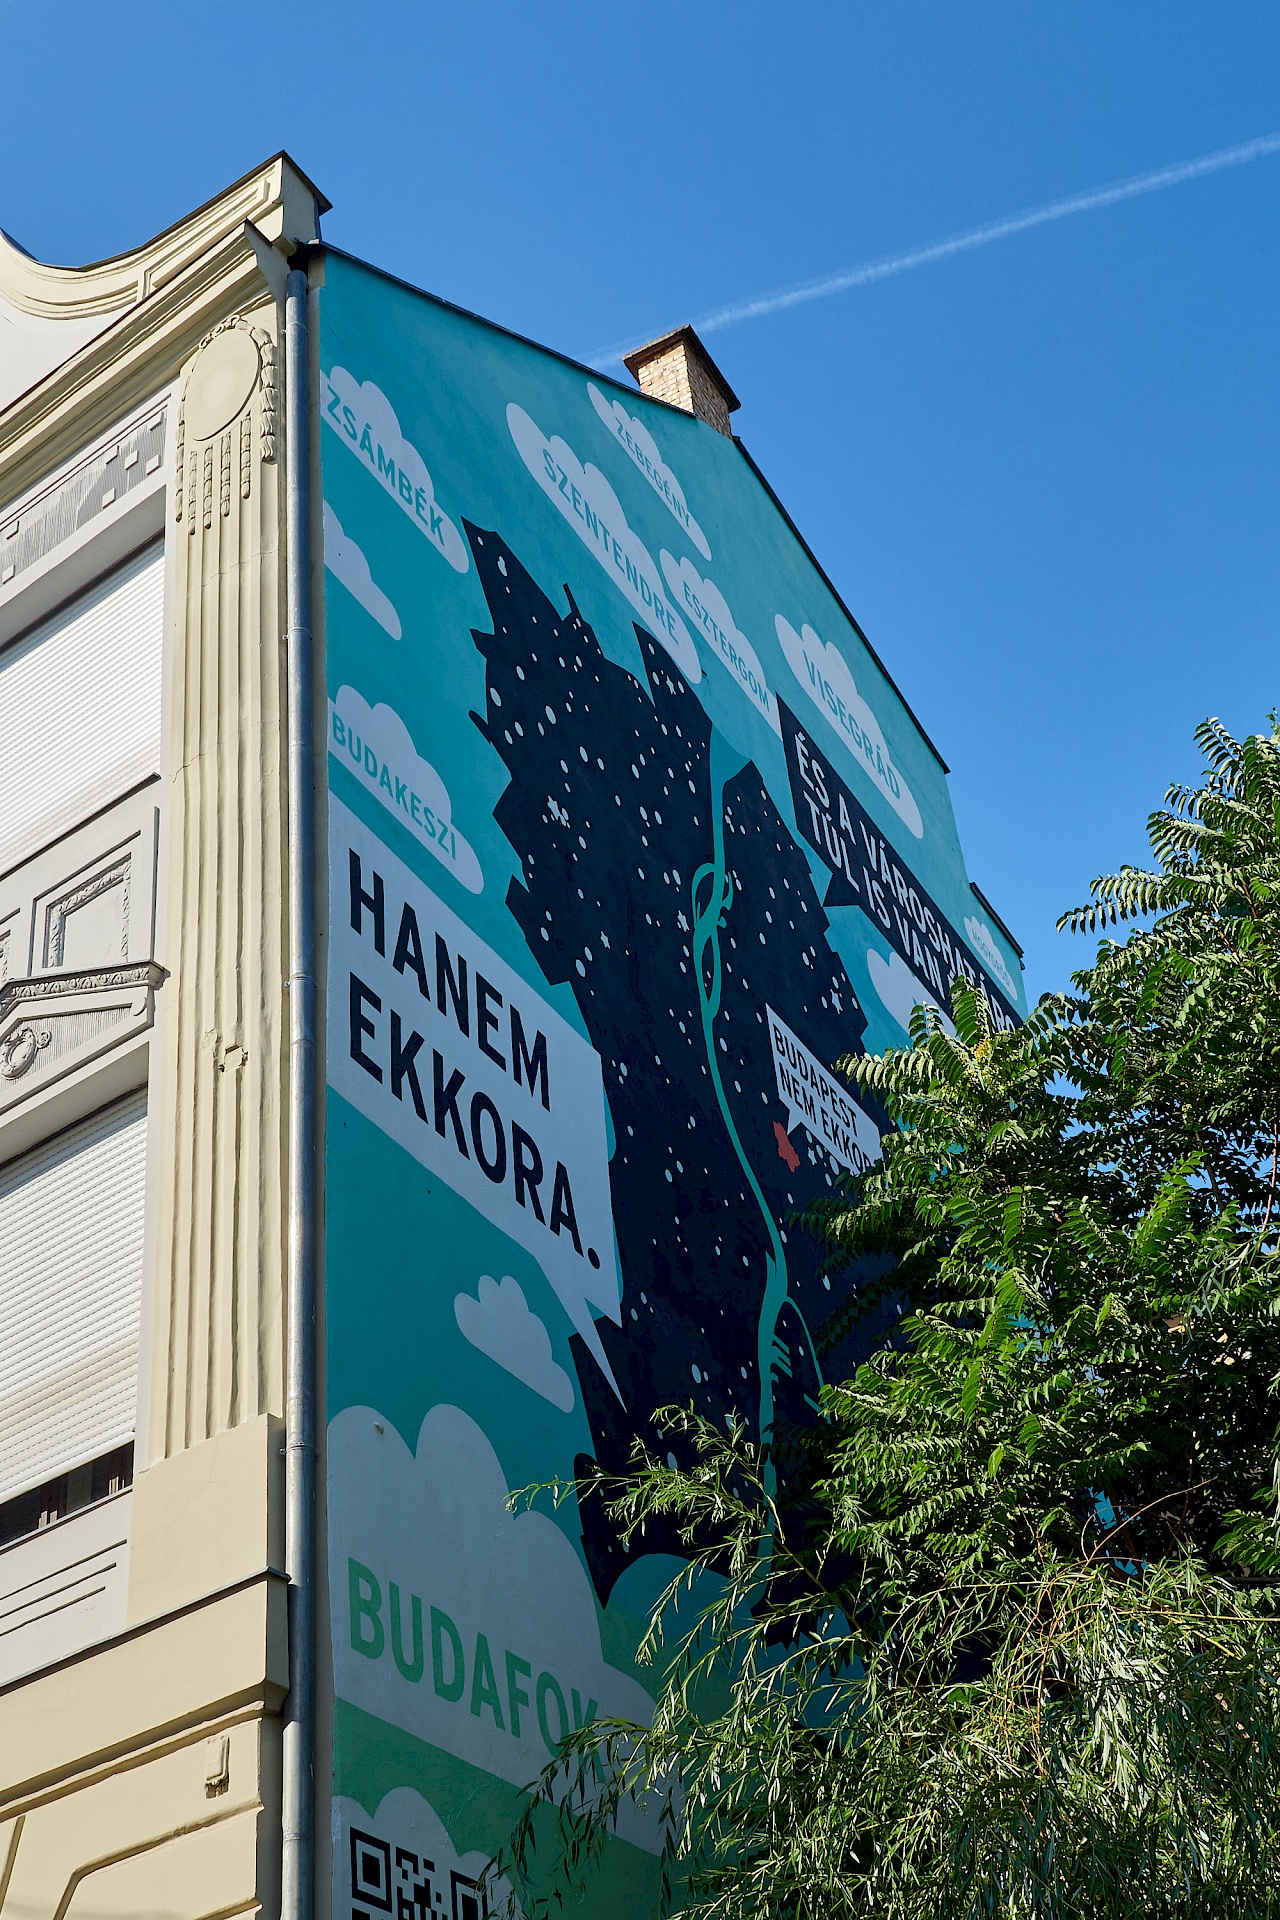 Street art in Budapest - Mural von Richárd Orosz